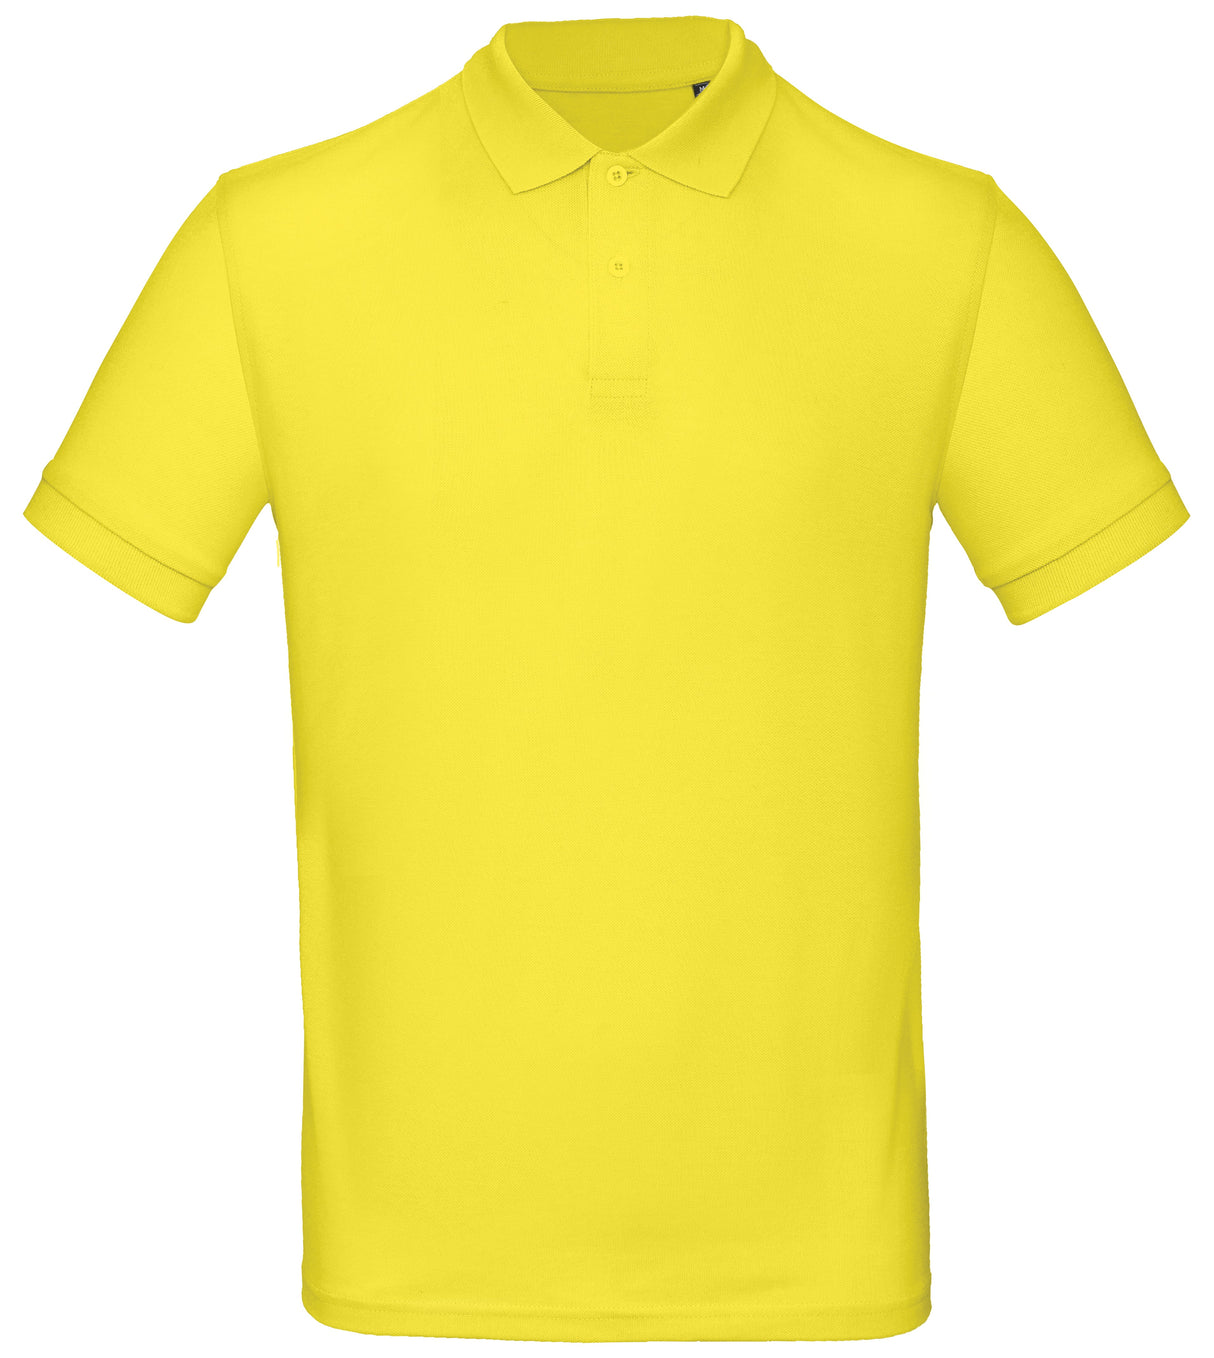 B&C Collection Inspire Polo Men - Solar Yellow